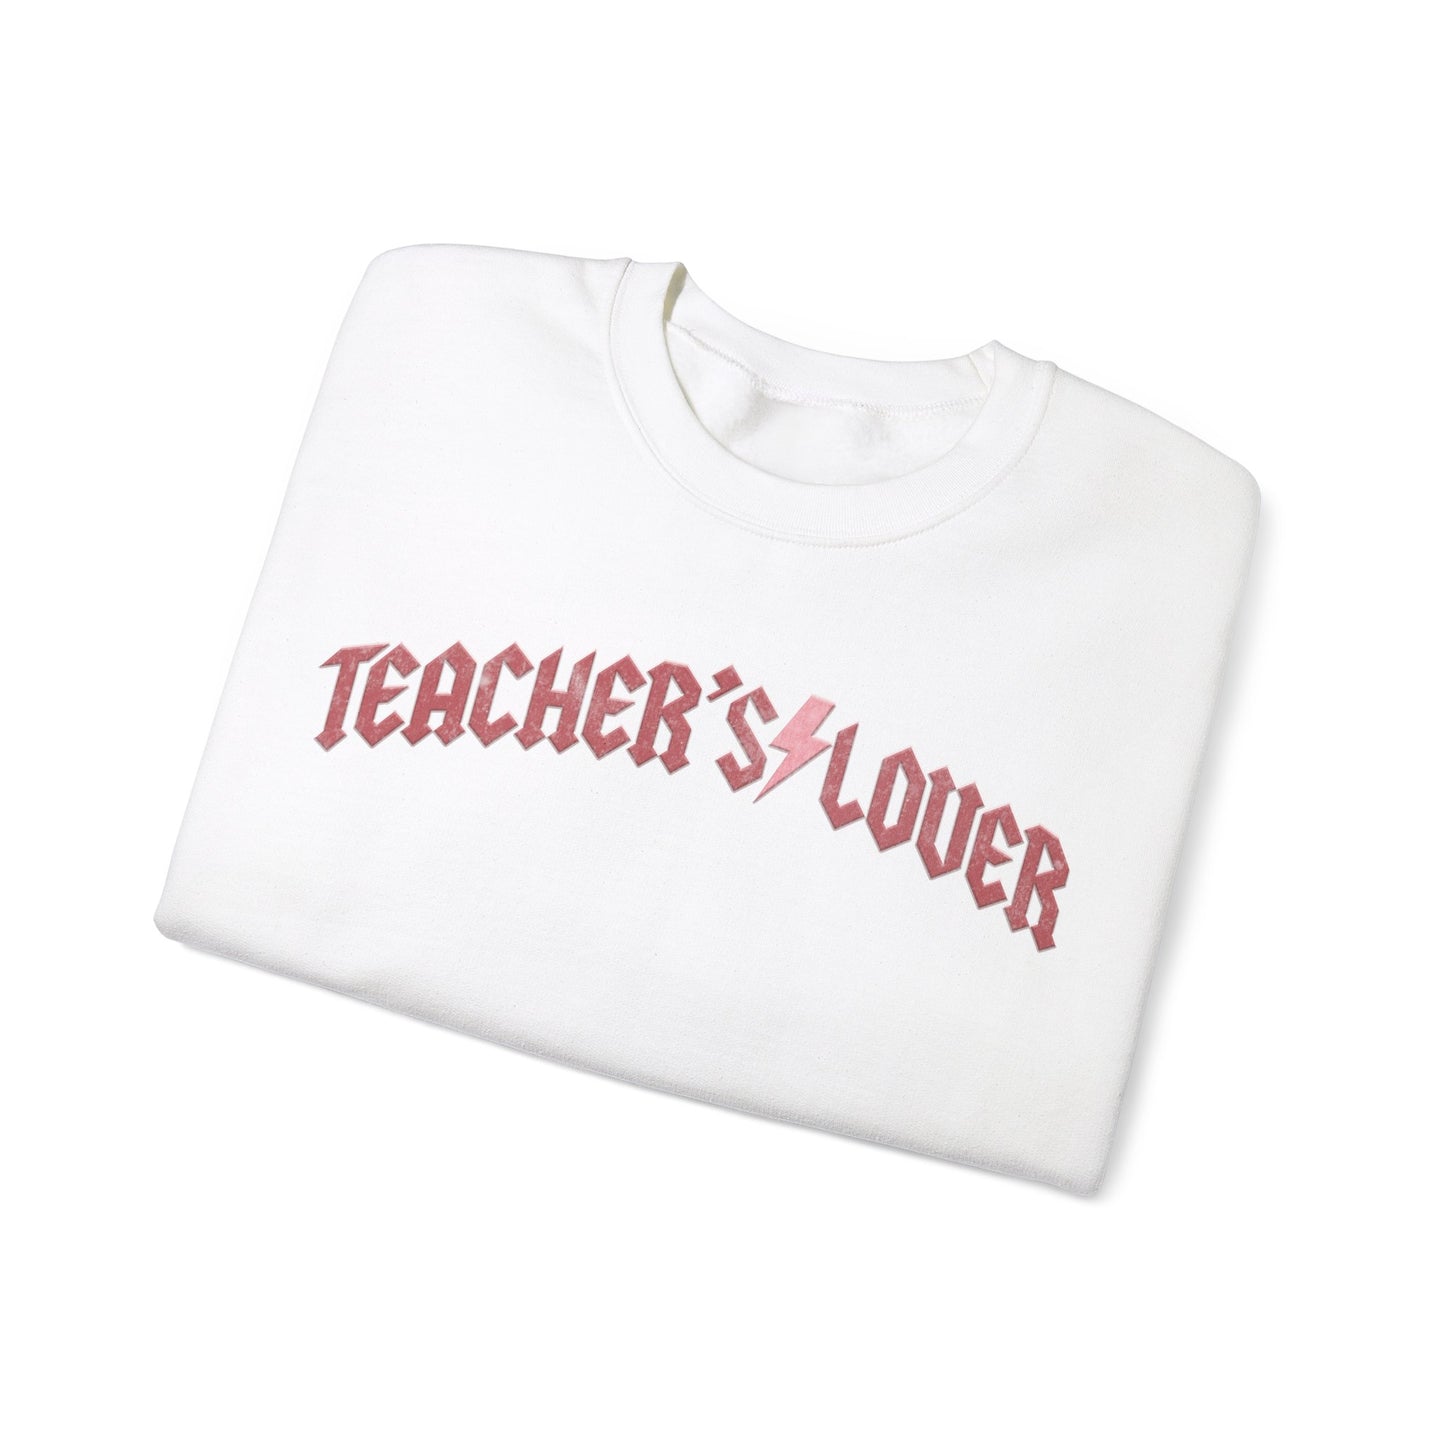 Retro Teacher's Lover Sweatshirt, Valentine's Day Sweatshirt, Pink Valentines Day Teacher Shirts, Valentine for Teacher's Lover Gift, S1311